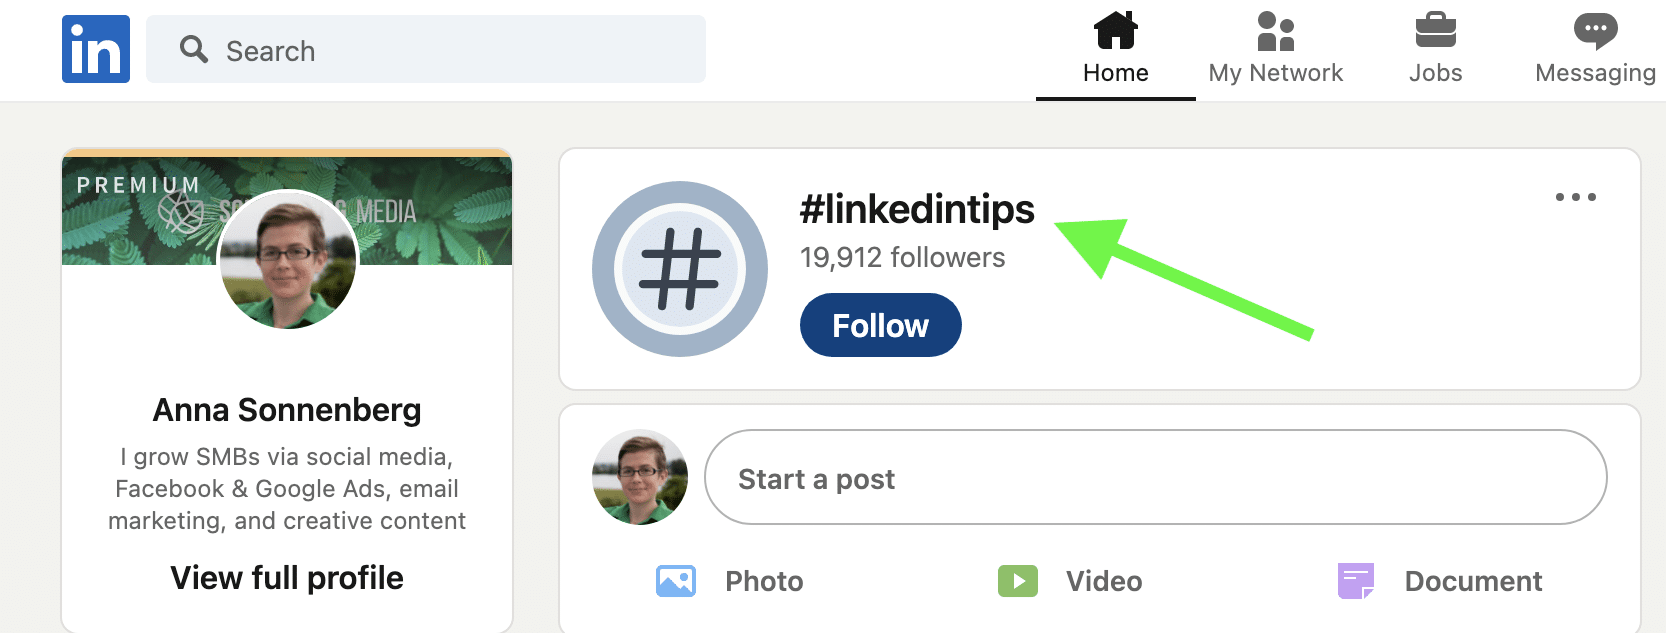 LinkedIn profile - follow hashtags